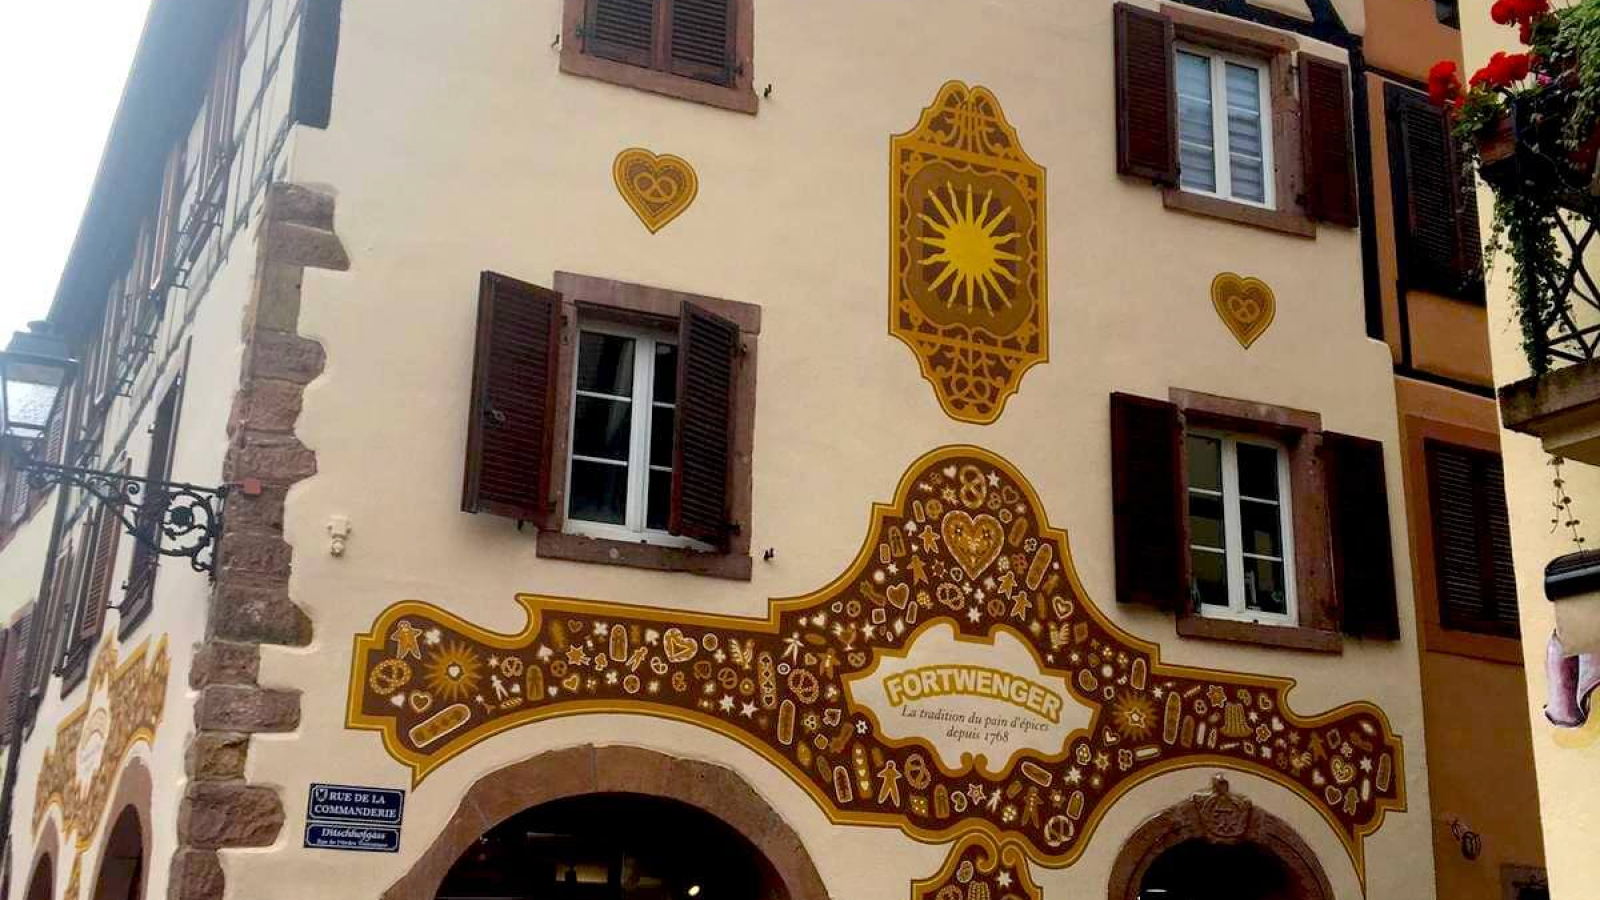 Fortwenger, 250 ans d'Histoire du pain d'épices - Made In Alsace